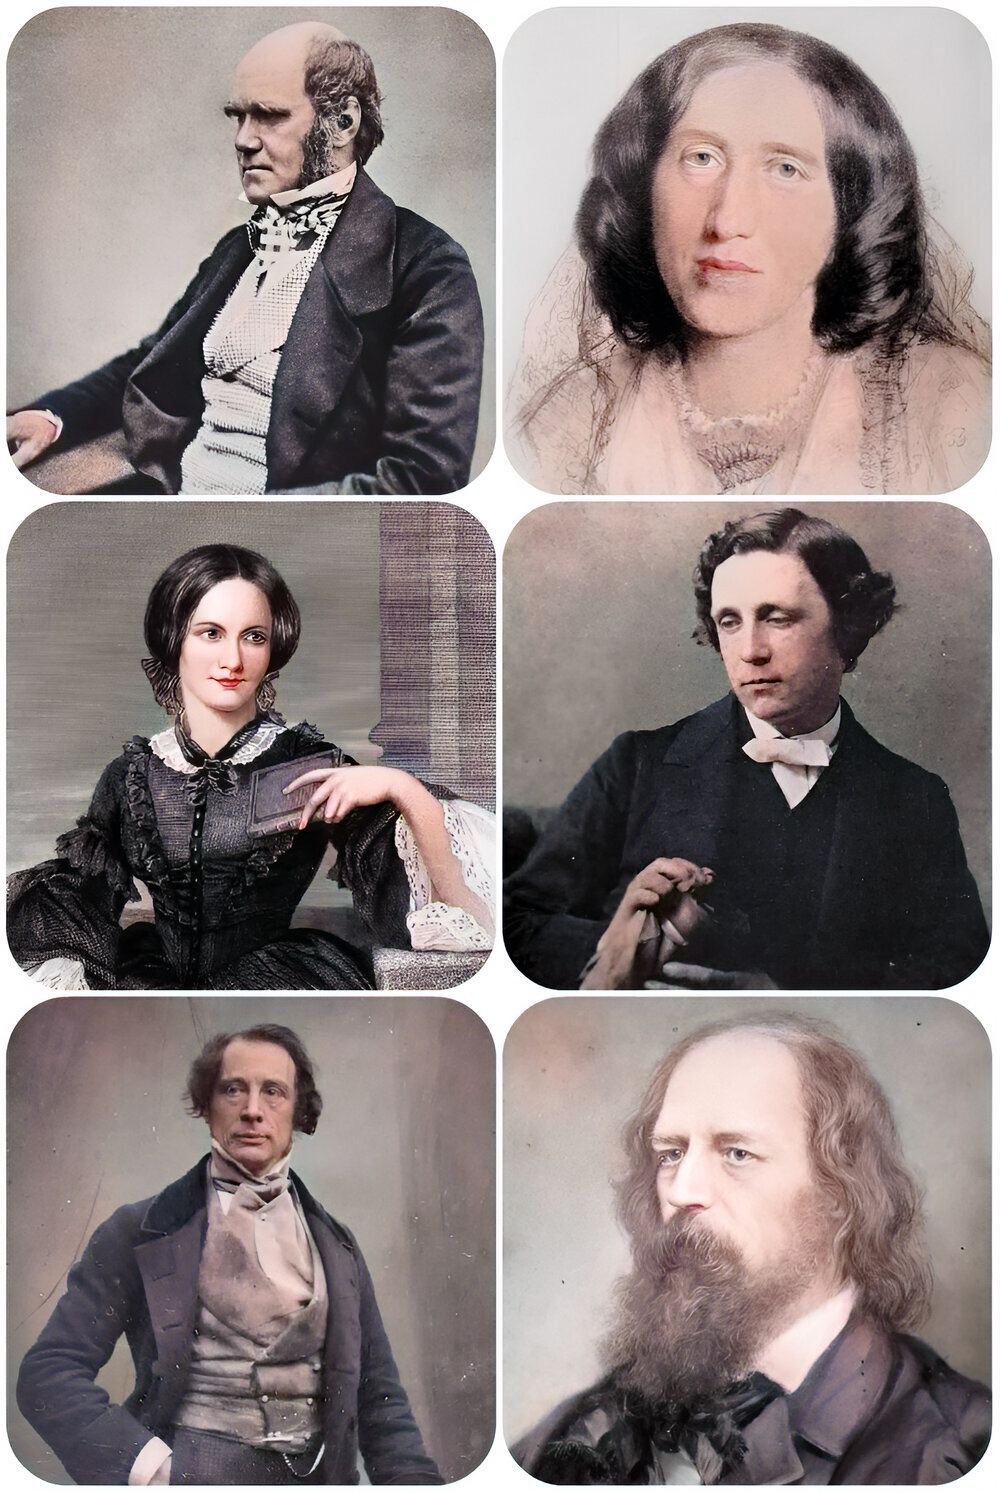 Victorian A-list celebrities